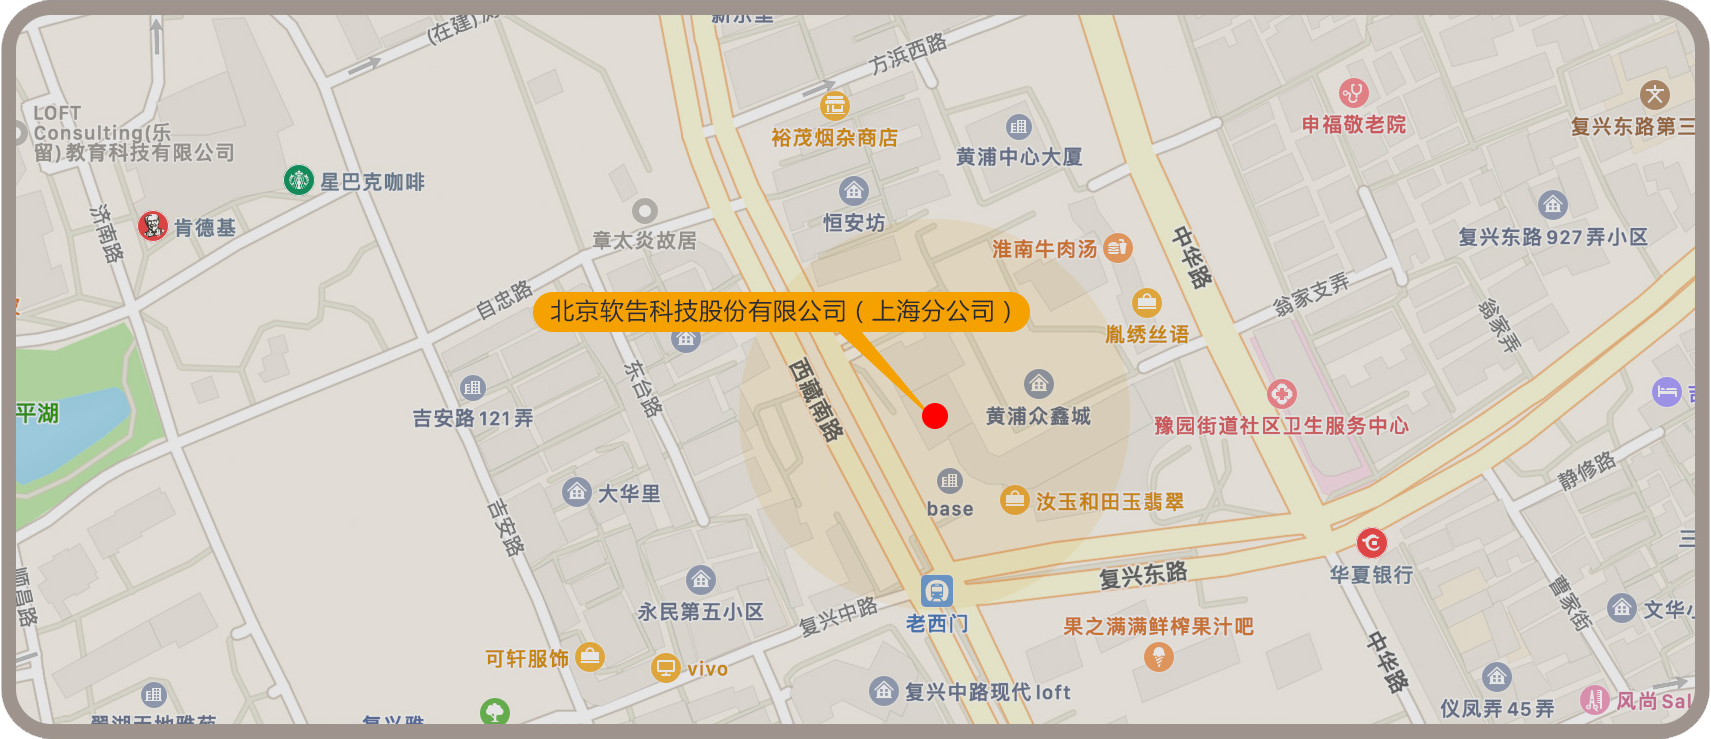 上海市黄浦区豫园街道西藏南路569号Spaces办公楼210